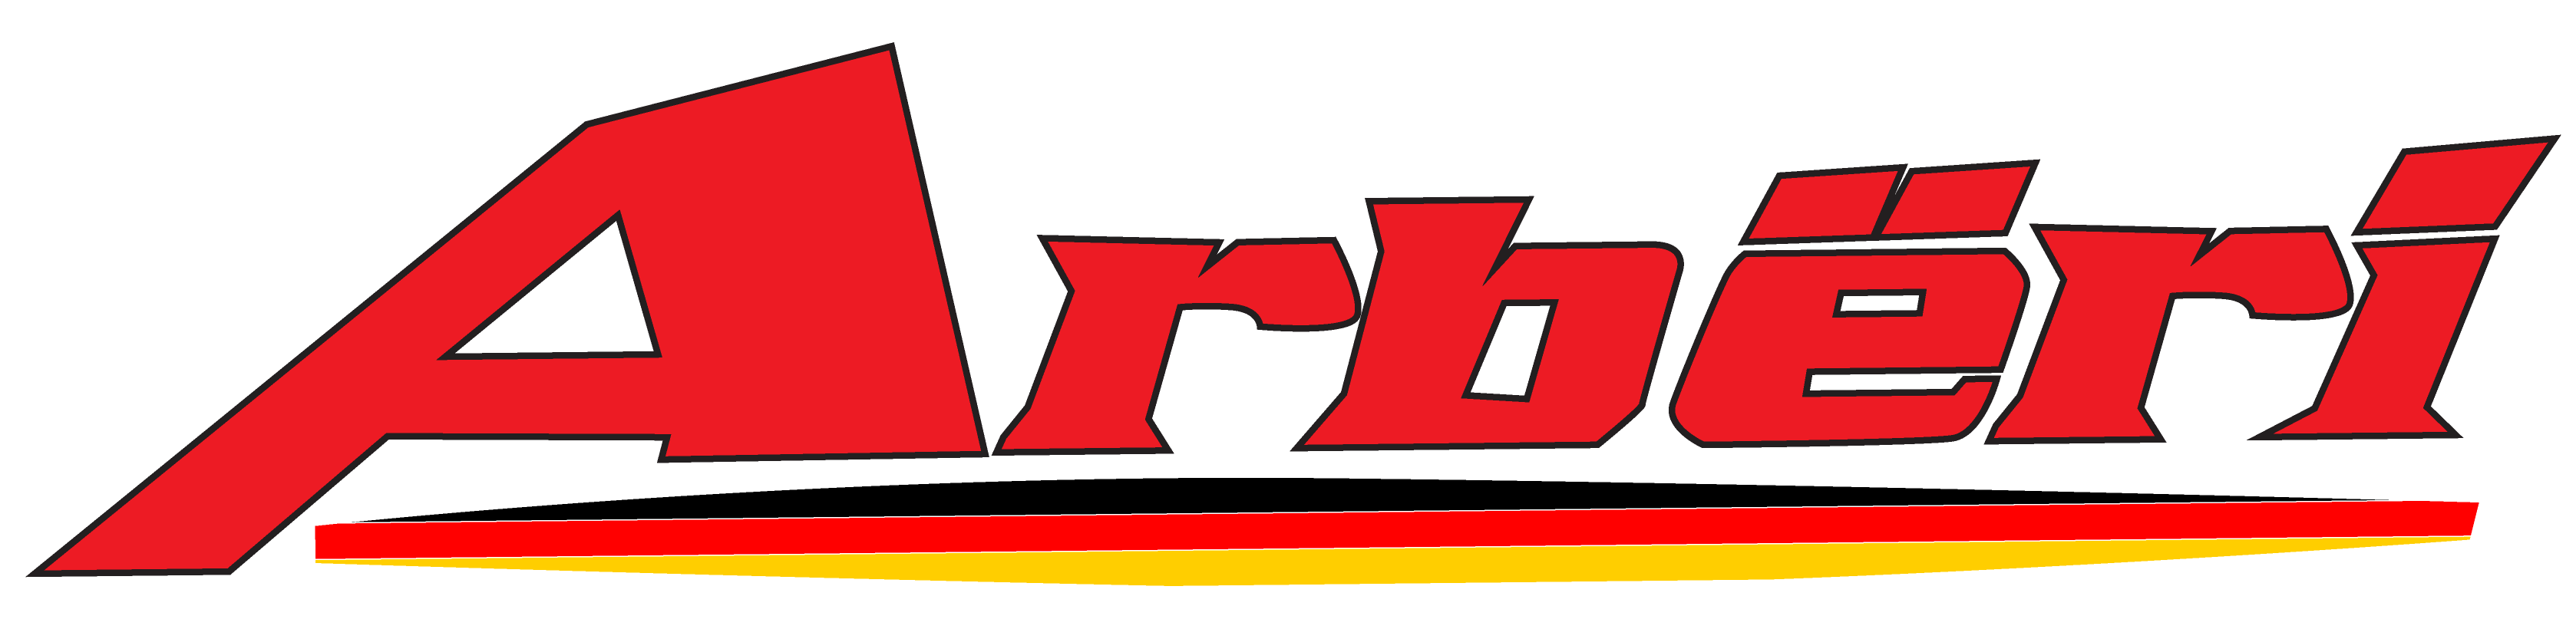 arber-png-logo